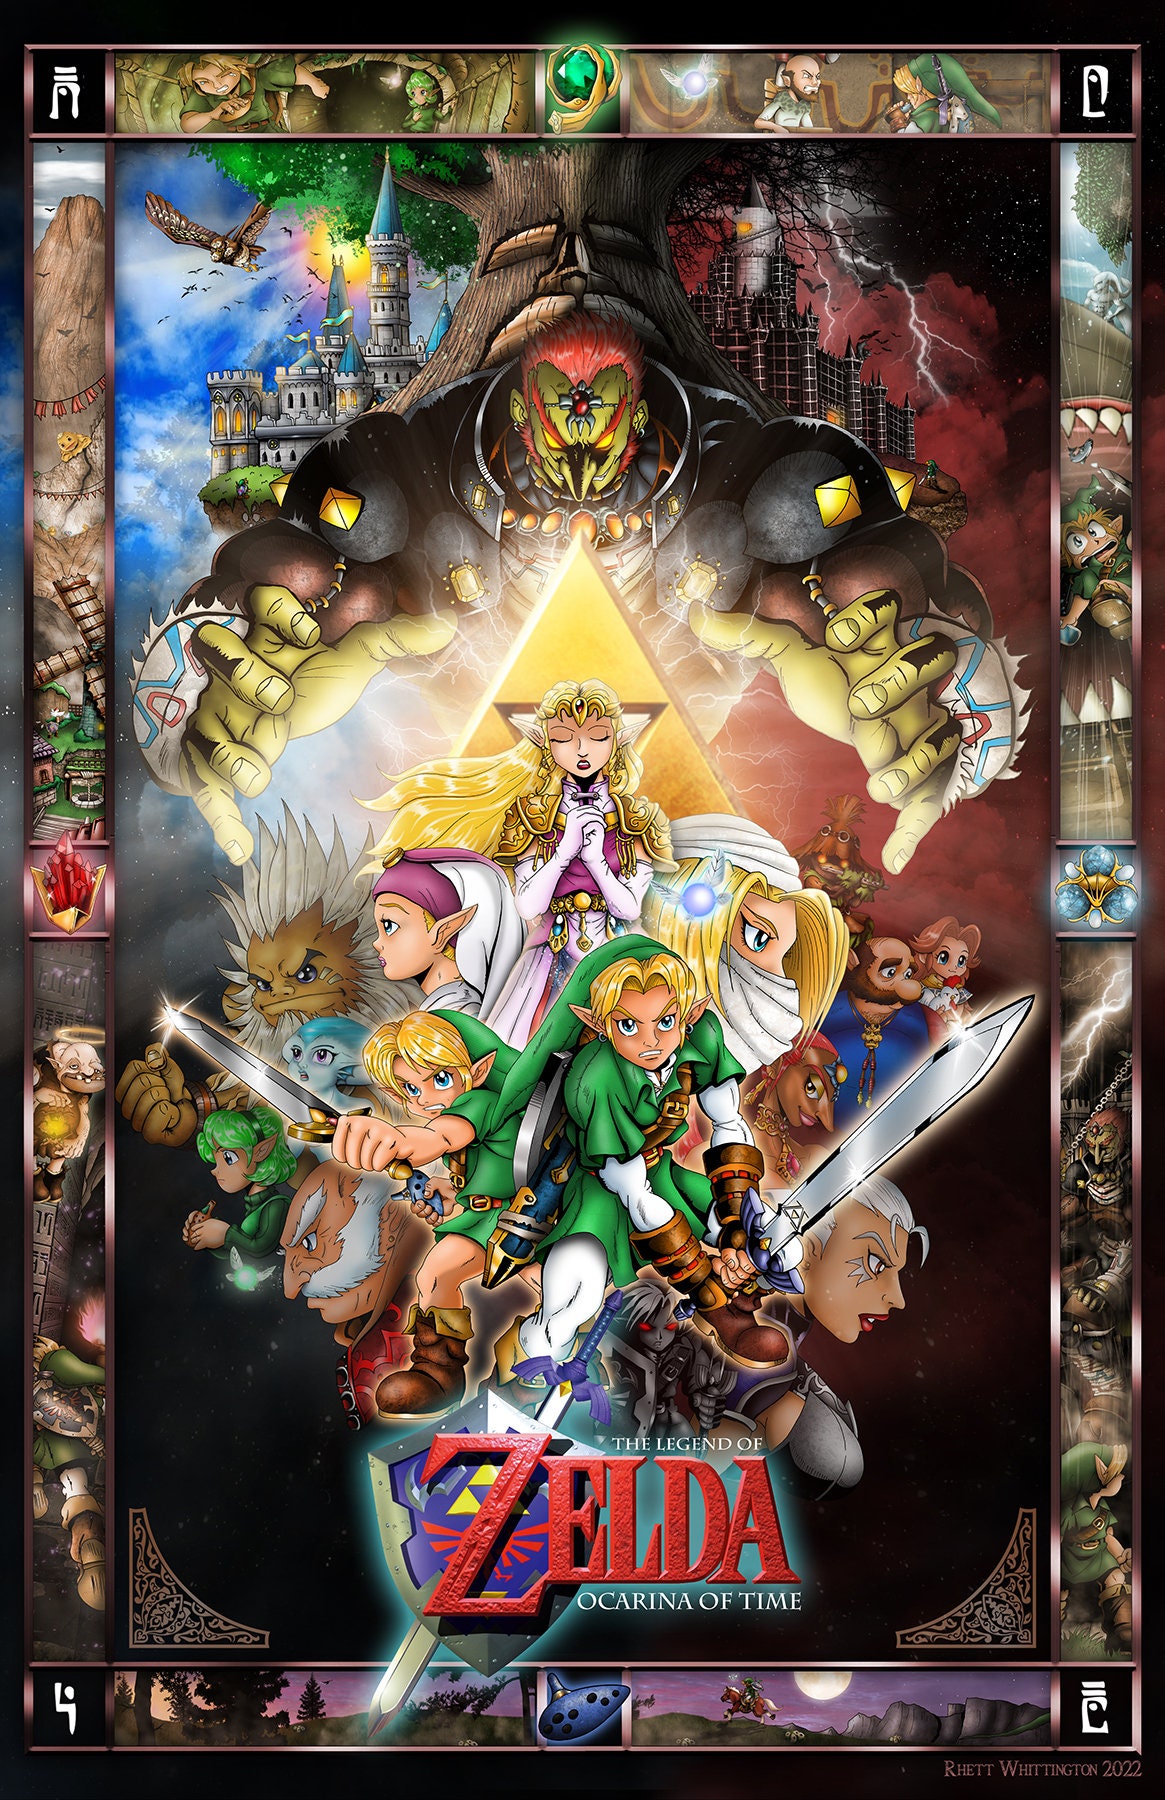 Compare versões de Legend of Zelda: Ocarina of Time em imagens